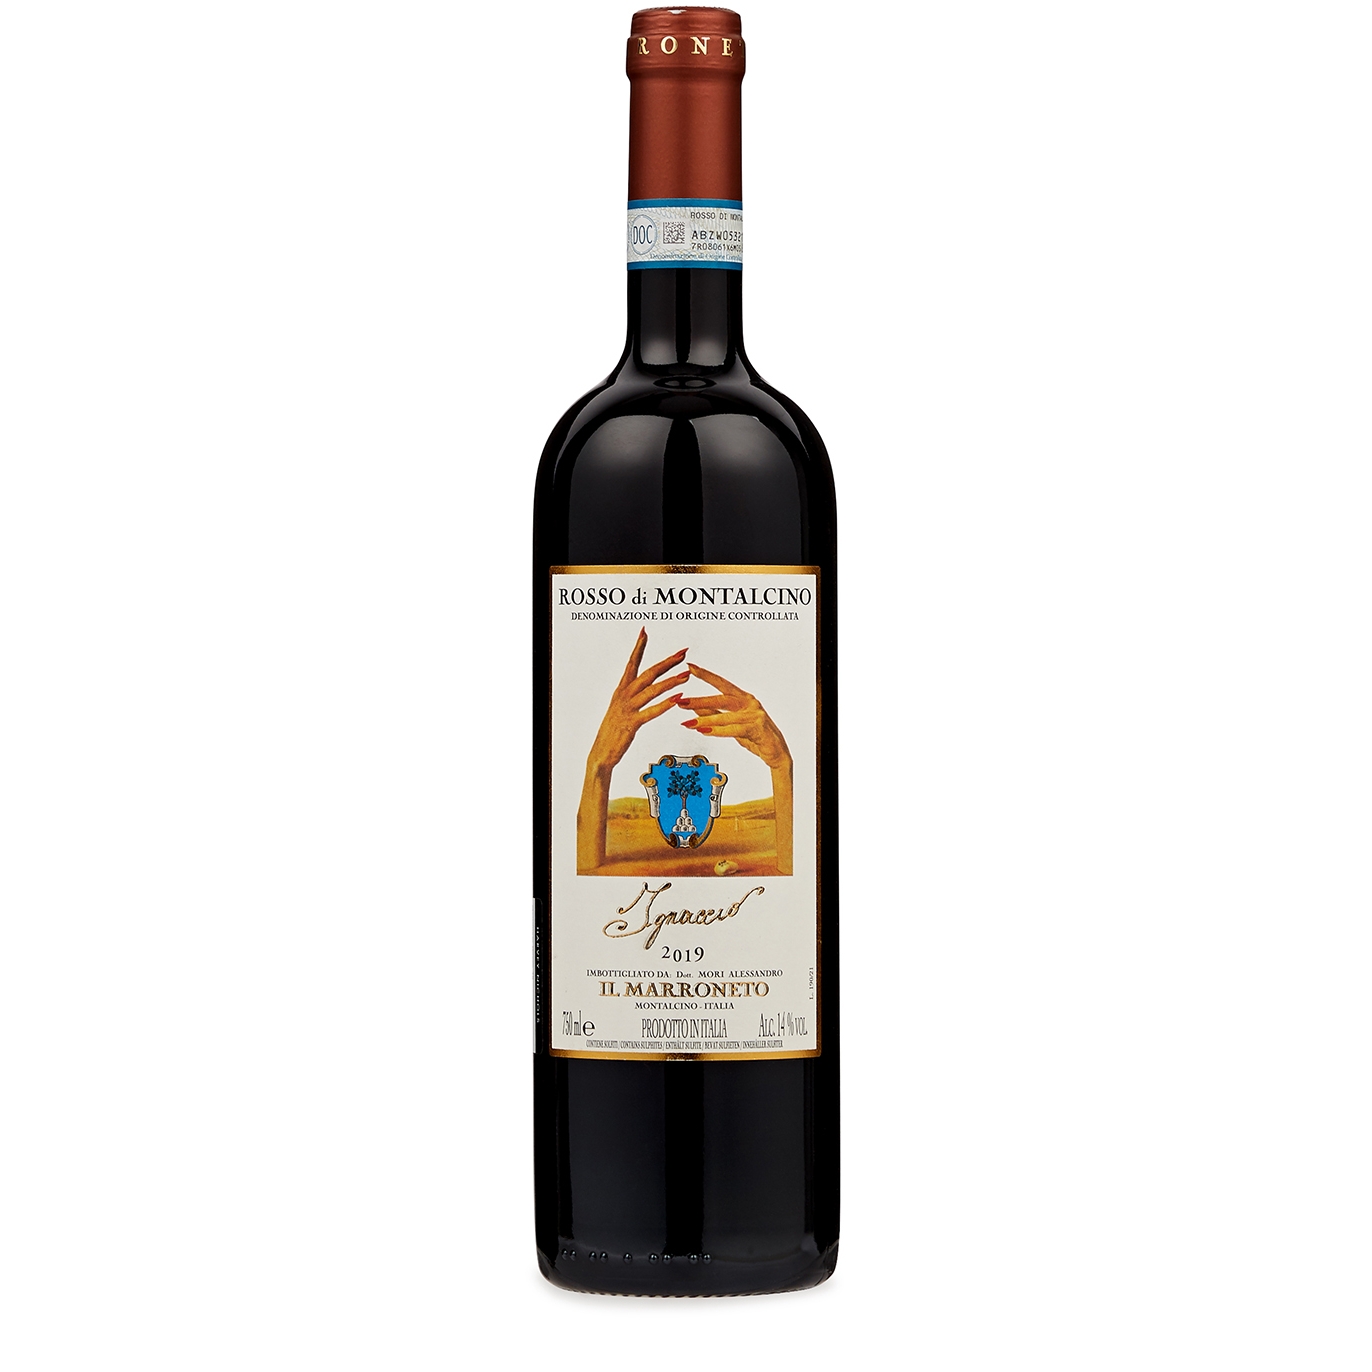 Il Marroneto Ignaccio Rosso Di Montalcino 2019 Red Wine